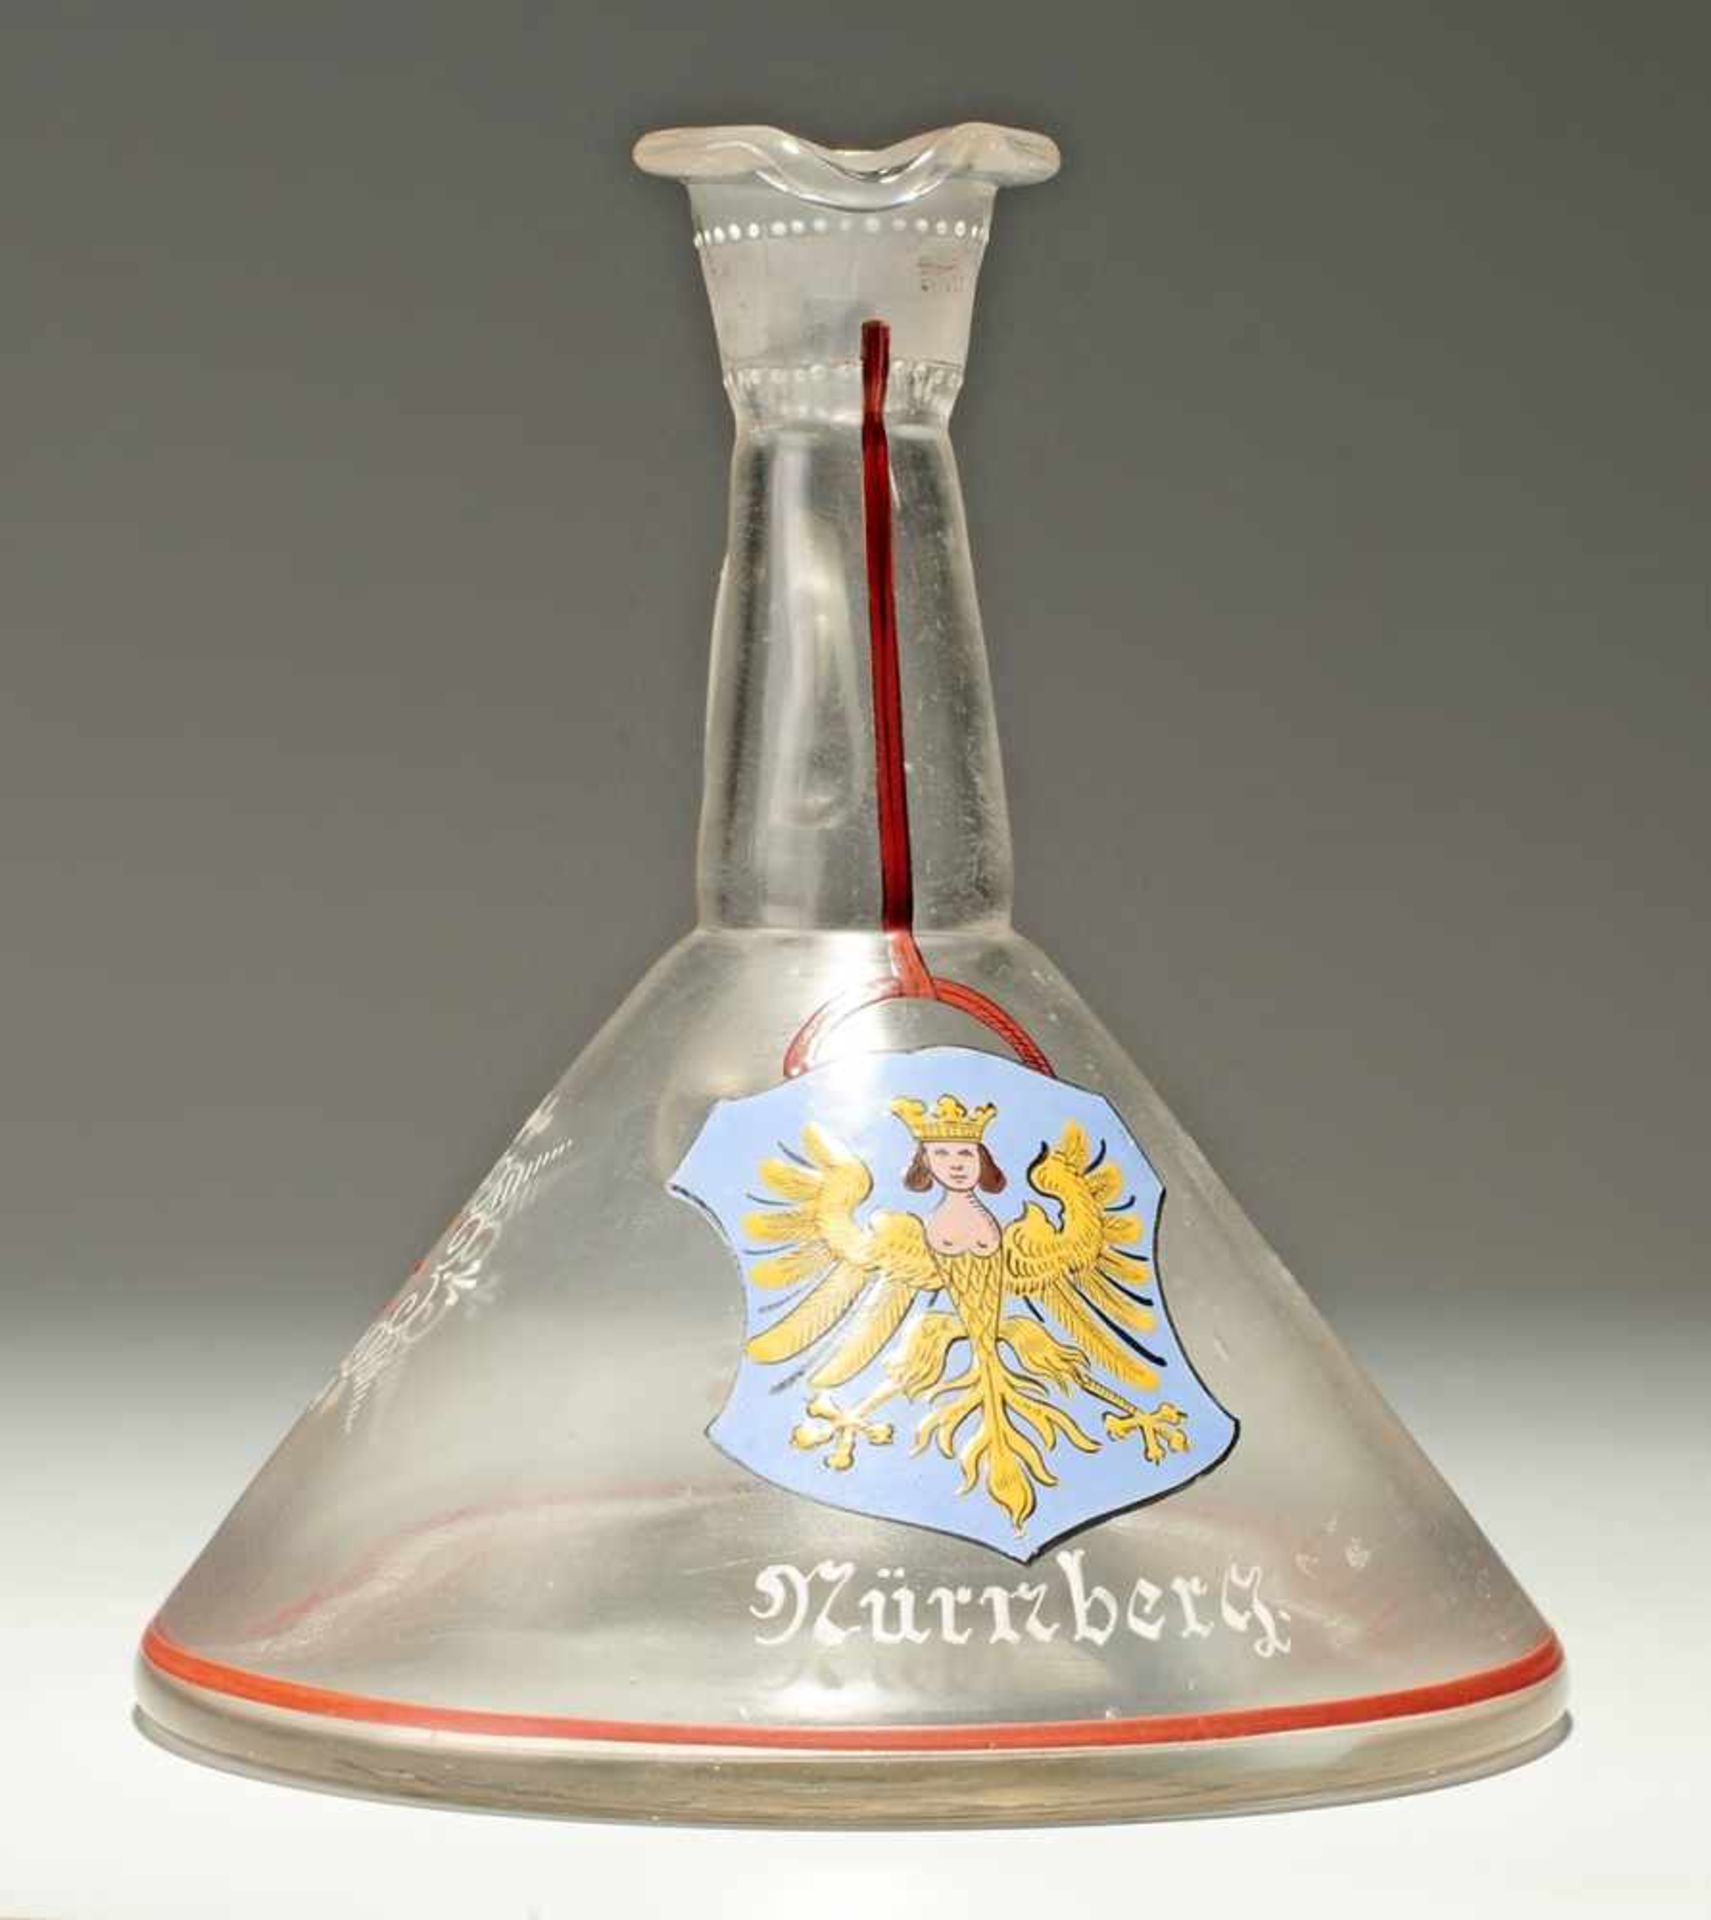 Karaffe "Nürnberg" Farbloses Glas, l. mattiert. Formgeblasen, Abriss. Kegelförmig mit schmalem Hals,